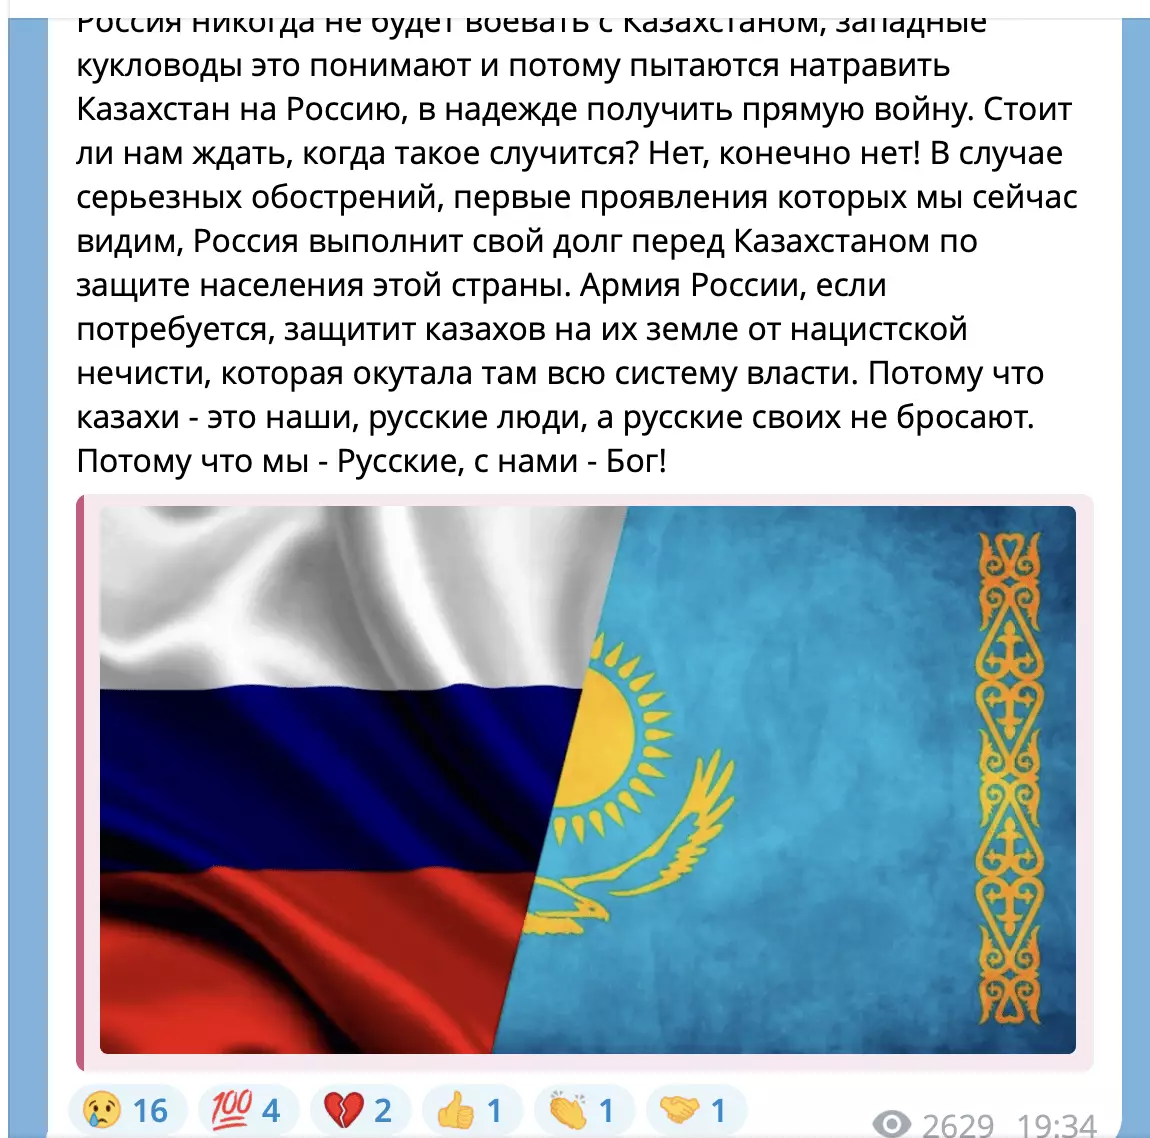 Пропагандистская организация «Солдатские вдовы России» обвинила Казахстан в борьбе с культурным наследием РФ